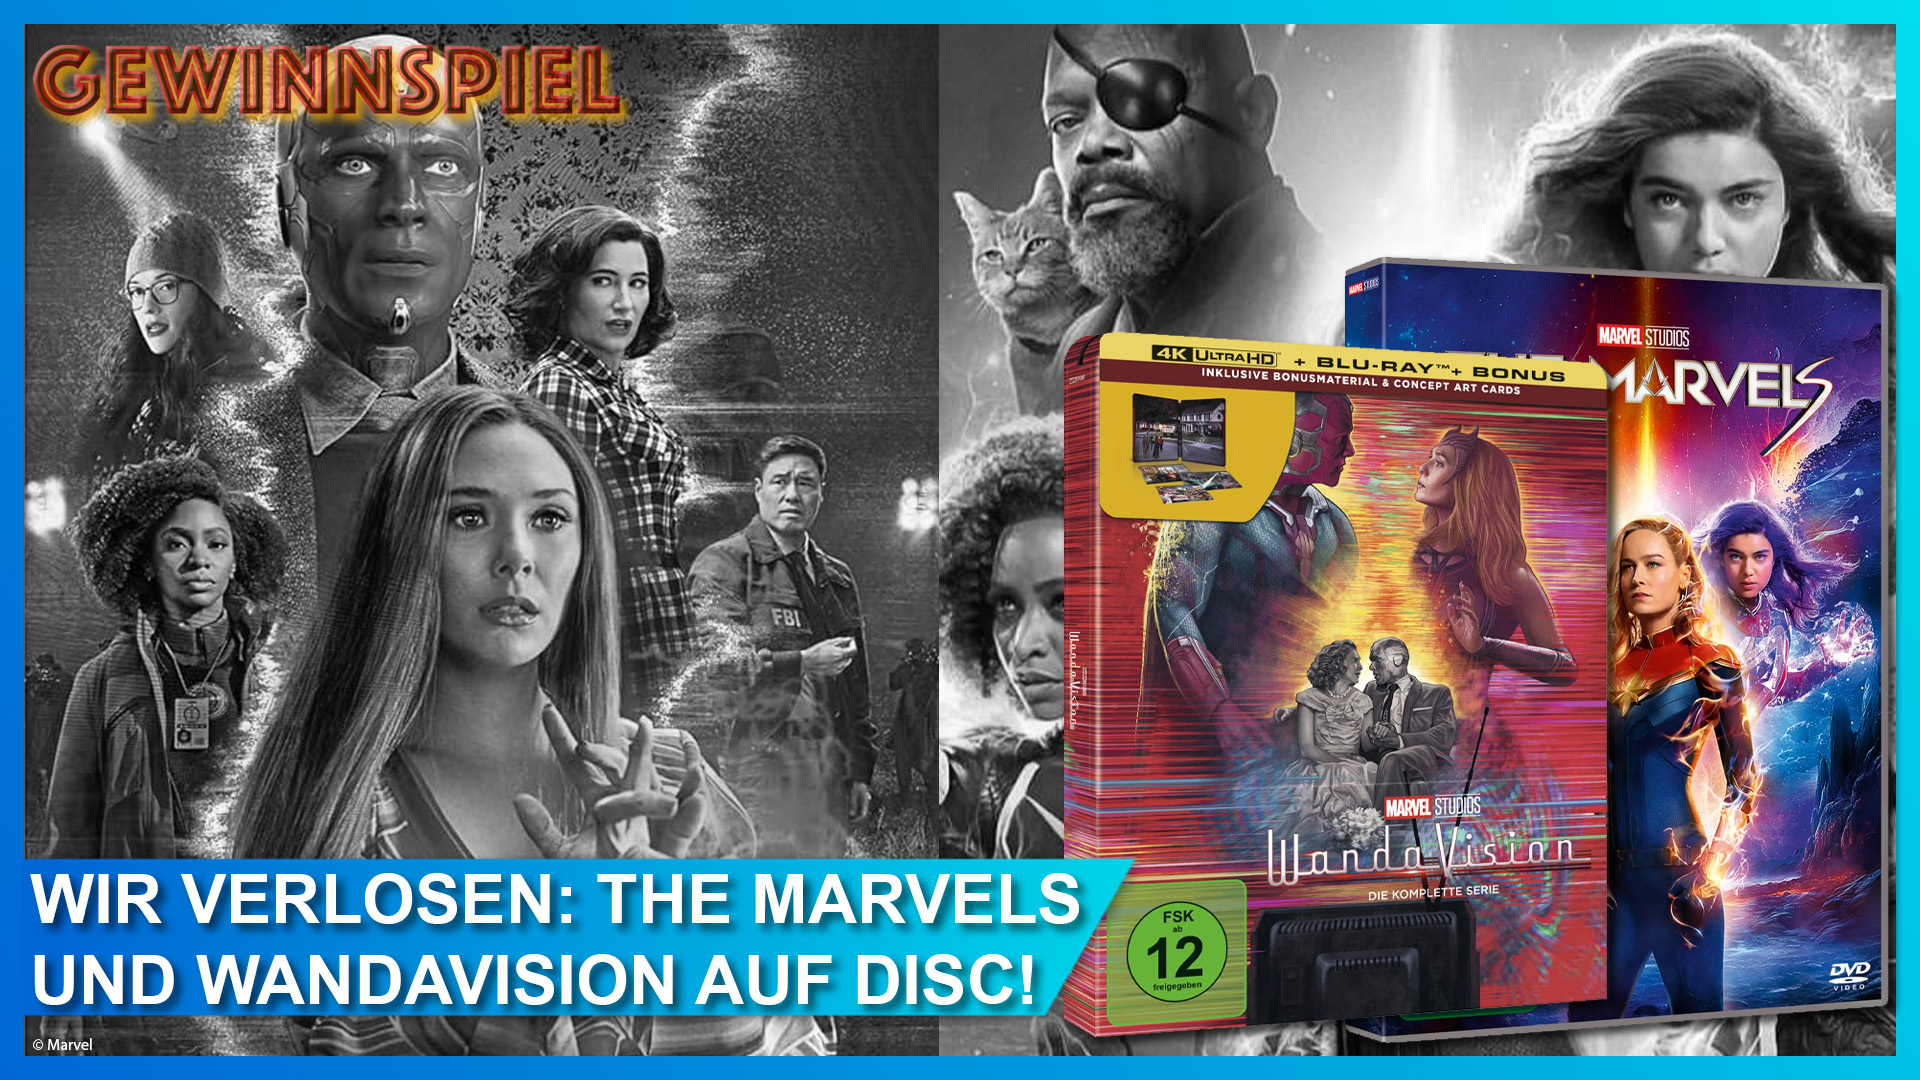 Mega Marvel Gewinnspiel: Wir verlosen 1x WANDAVISION im limitierten 4K Ultra HD Blu-ray Steelbook und 2x THE MARVELS auf DVD!